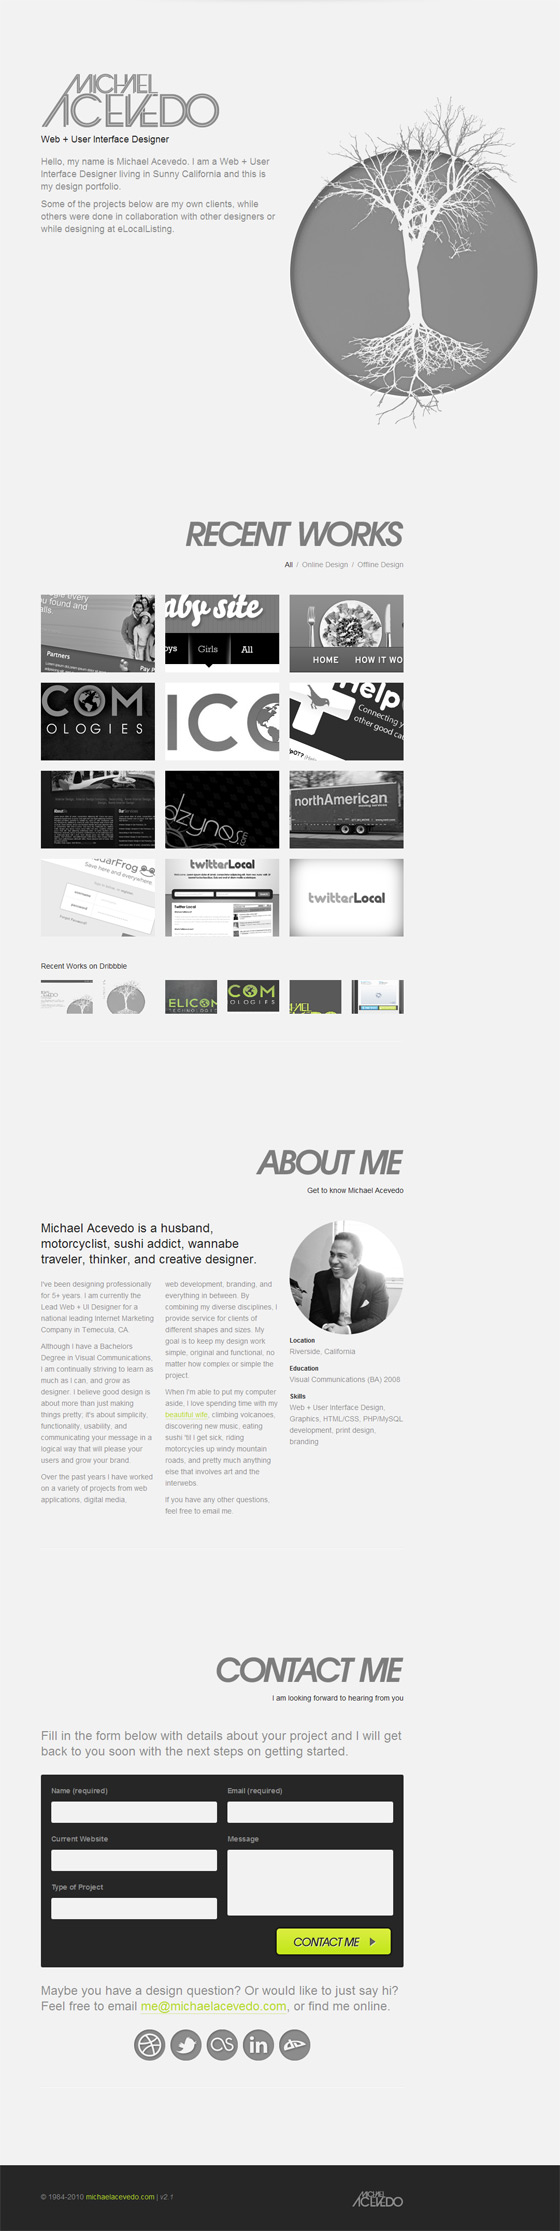 Michael Acevedo | Web Designer